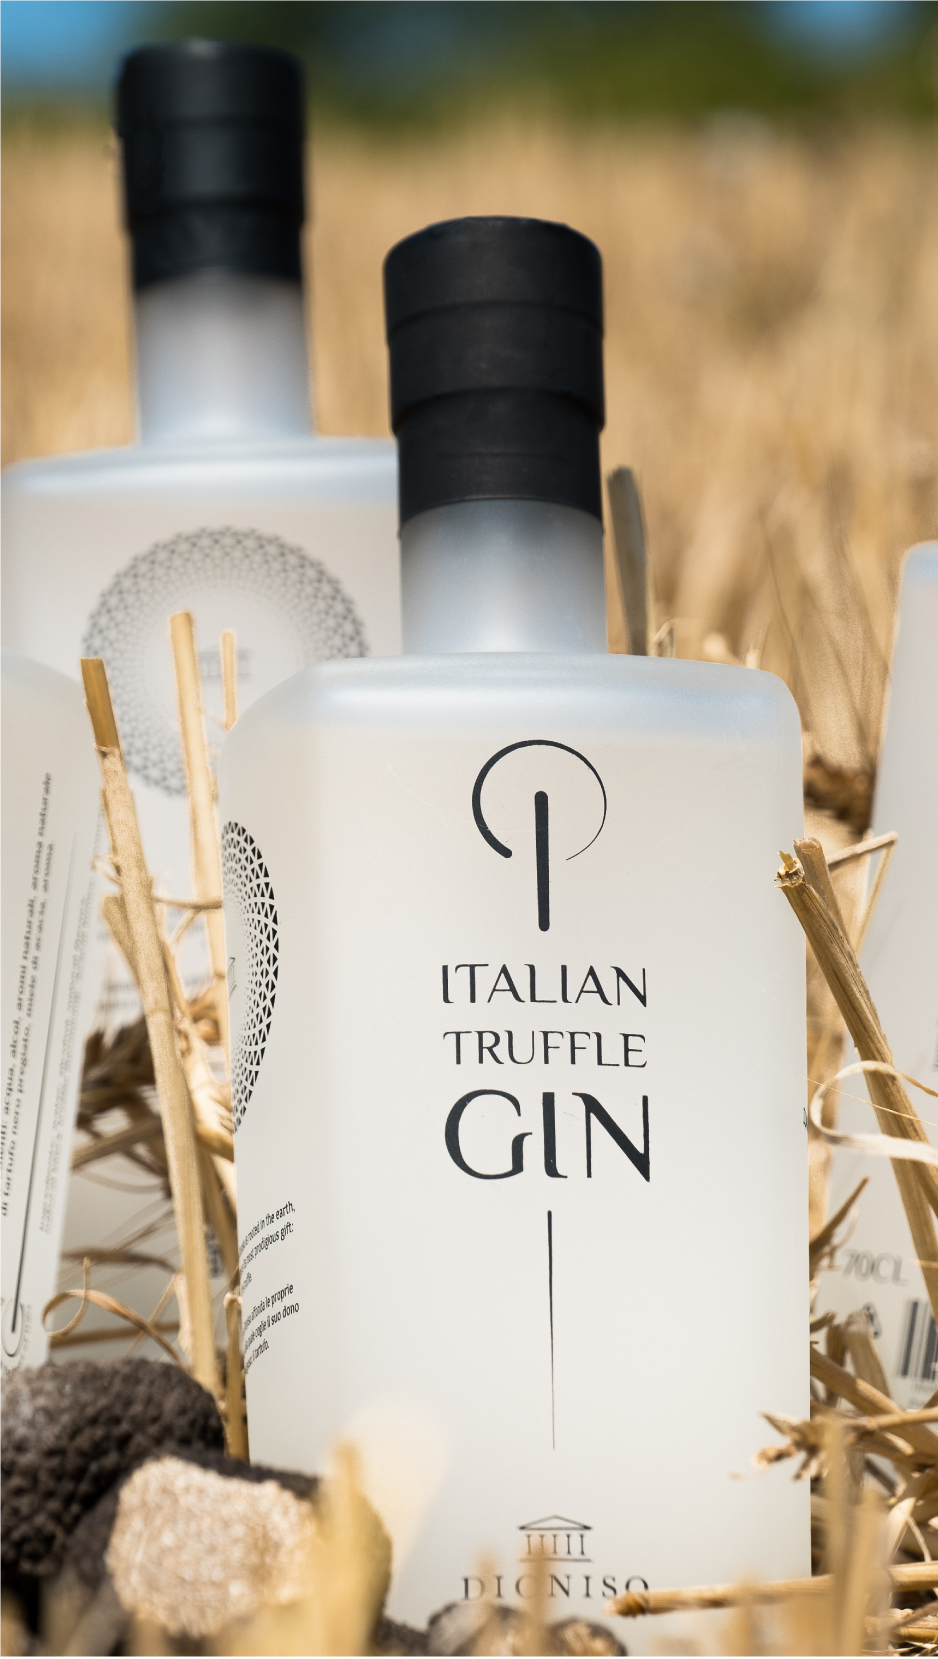 ITALIAN TRUFFLE GIN -  La grande sfida di creare un gin partendo da un'infusione di tartufo per arrivare ad un prodotto raffinato ed elegante in grado di raccontare in chiave innovativa una vera eccellenza italiana.